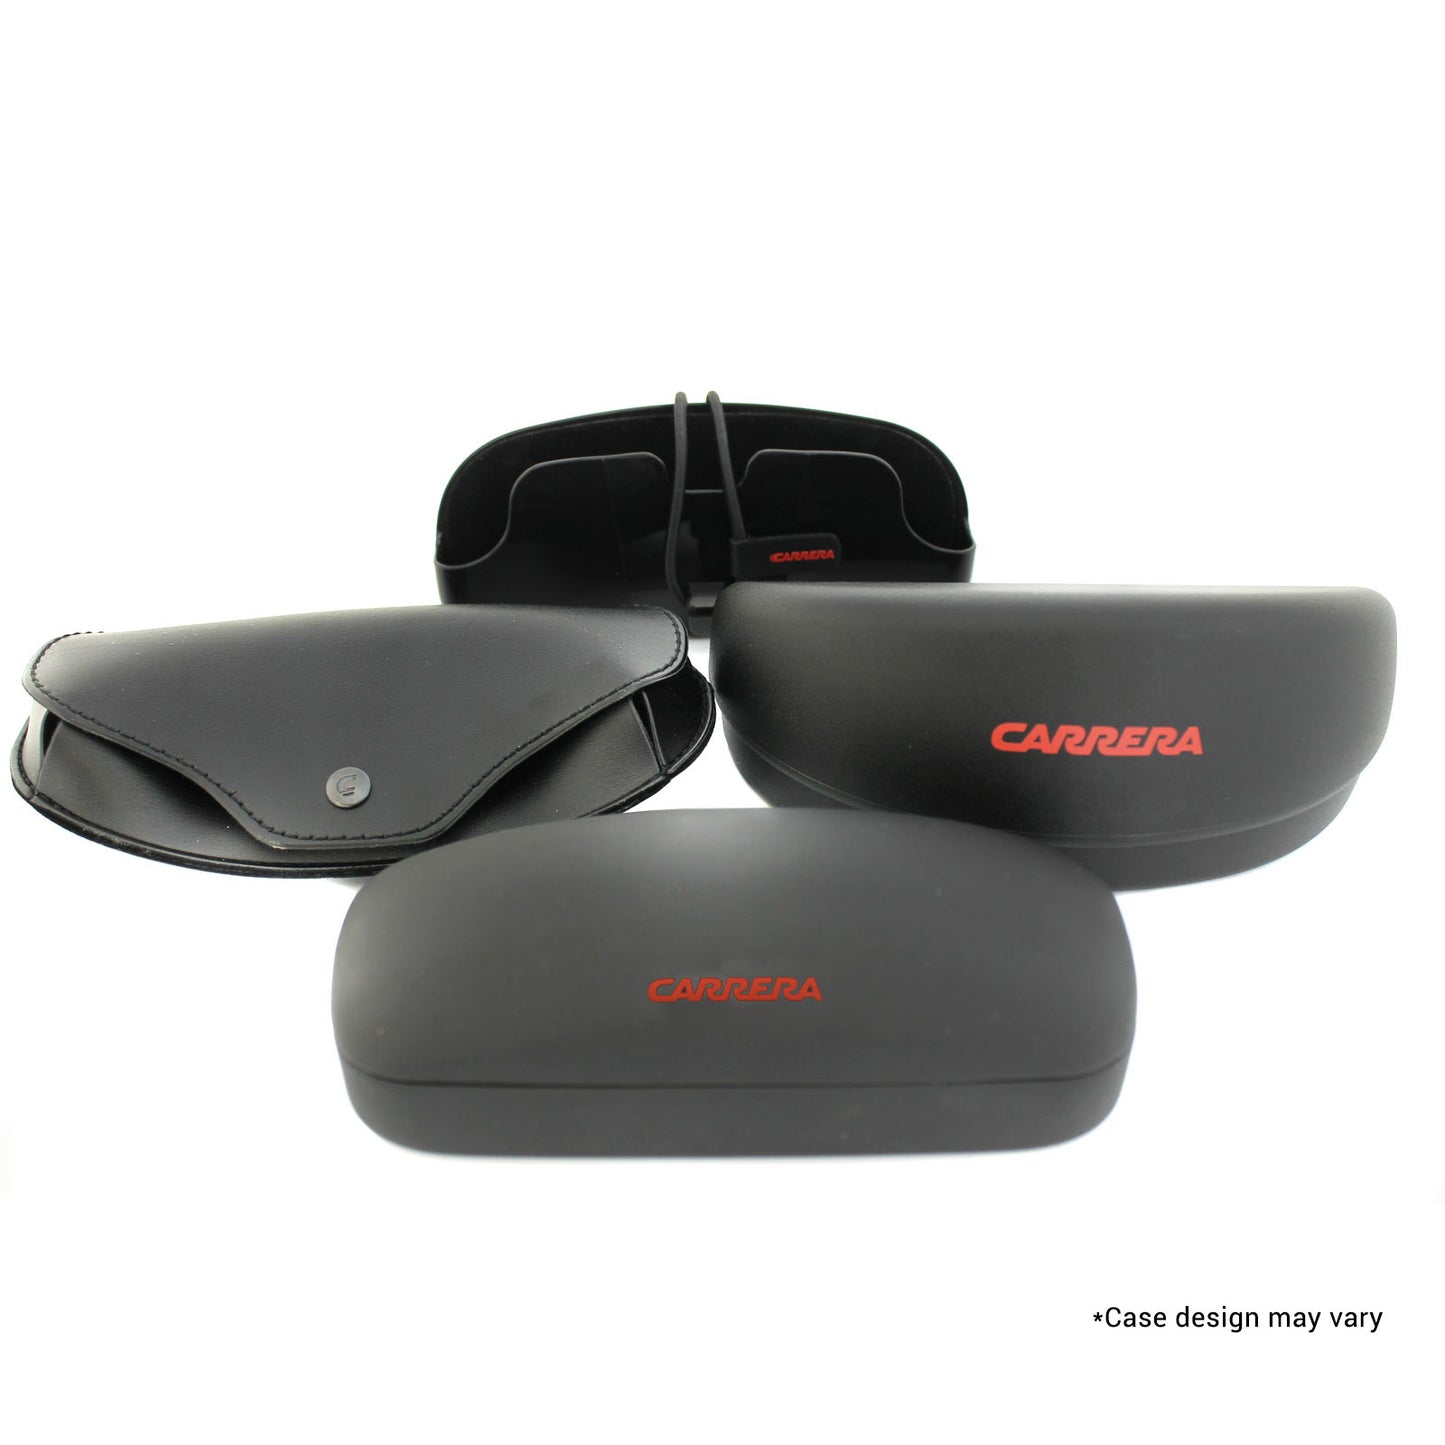 Carrera CA1021S-S9E13 00mm